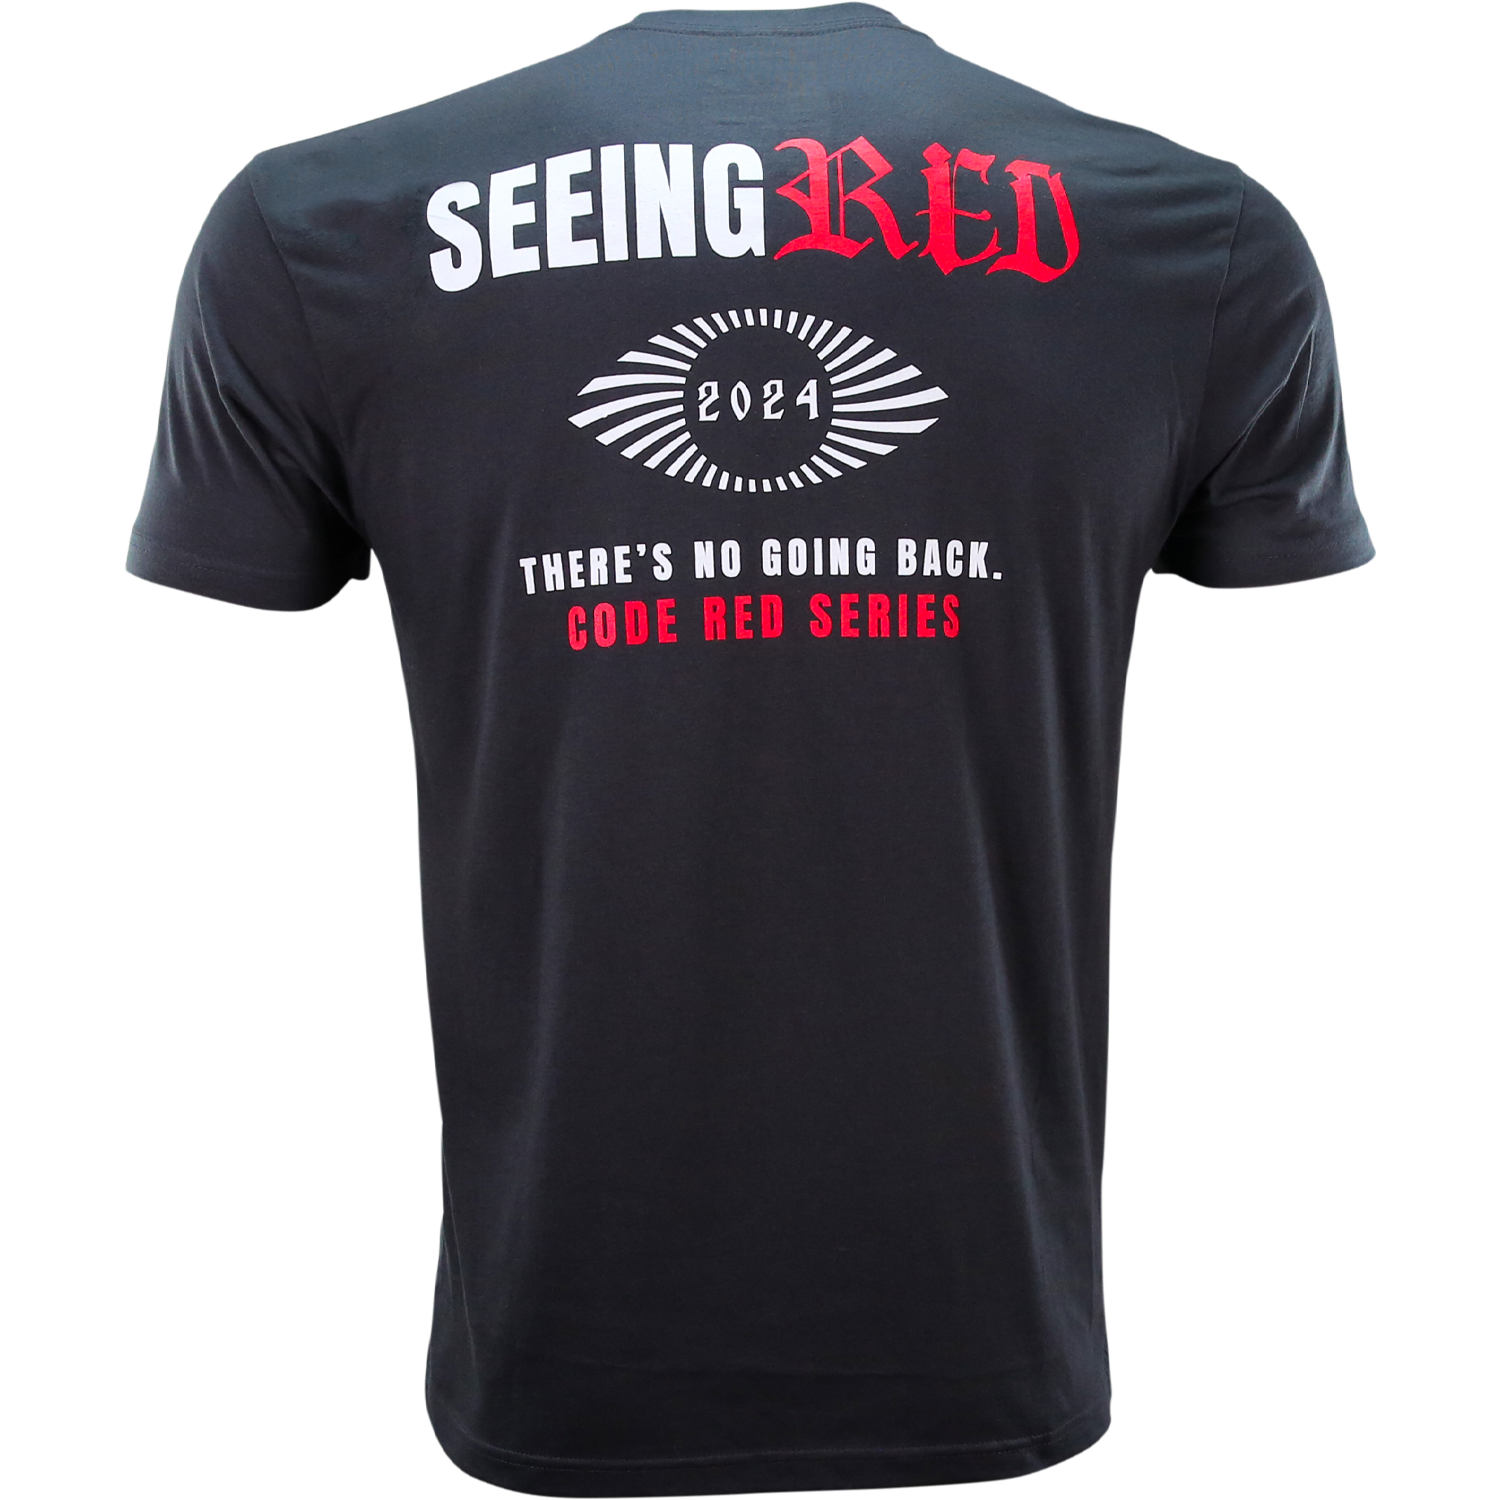 Seeing Red, Dark Gray T-Shirt